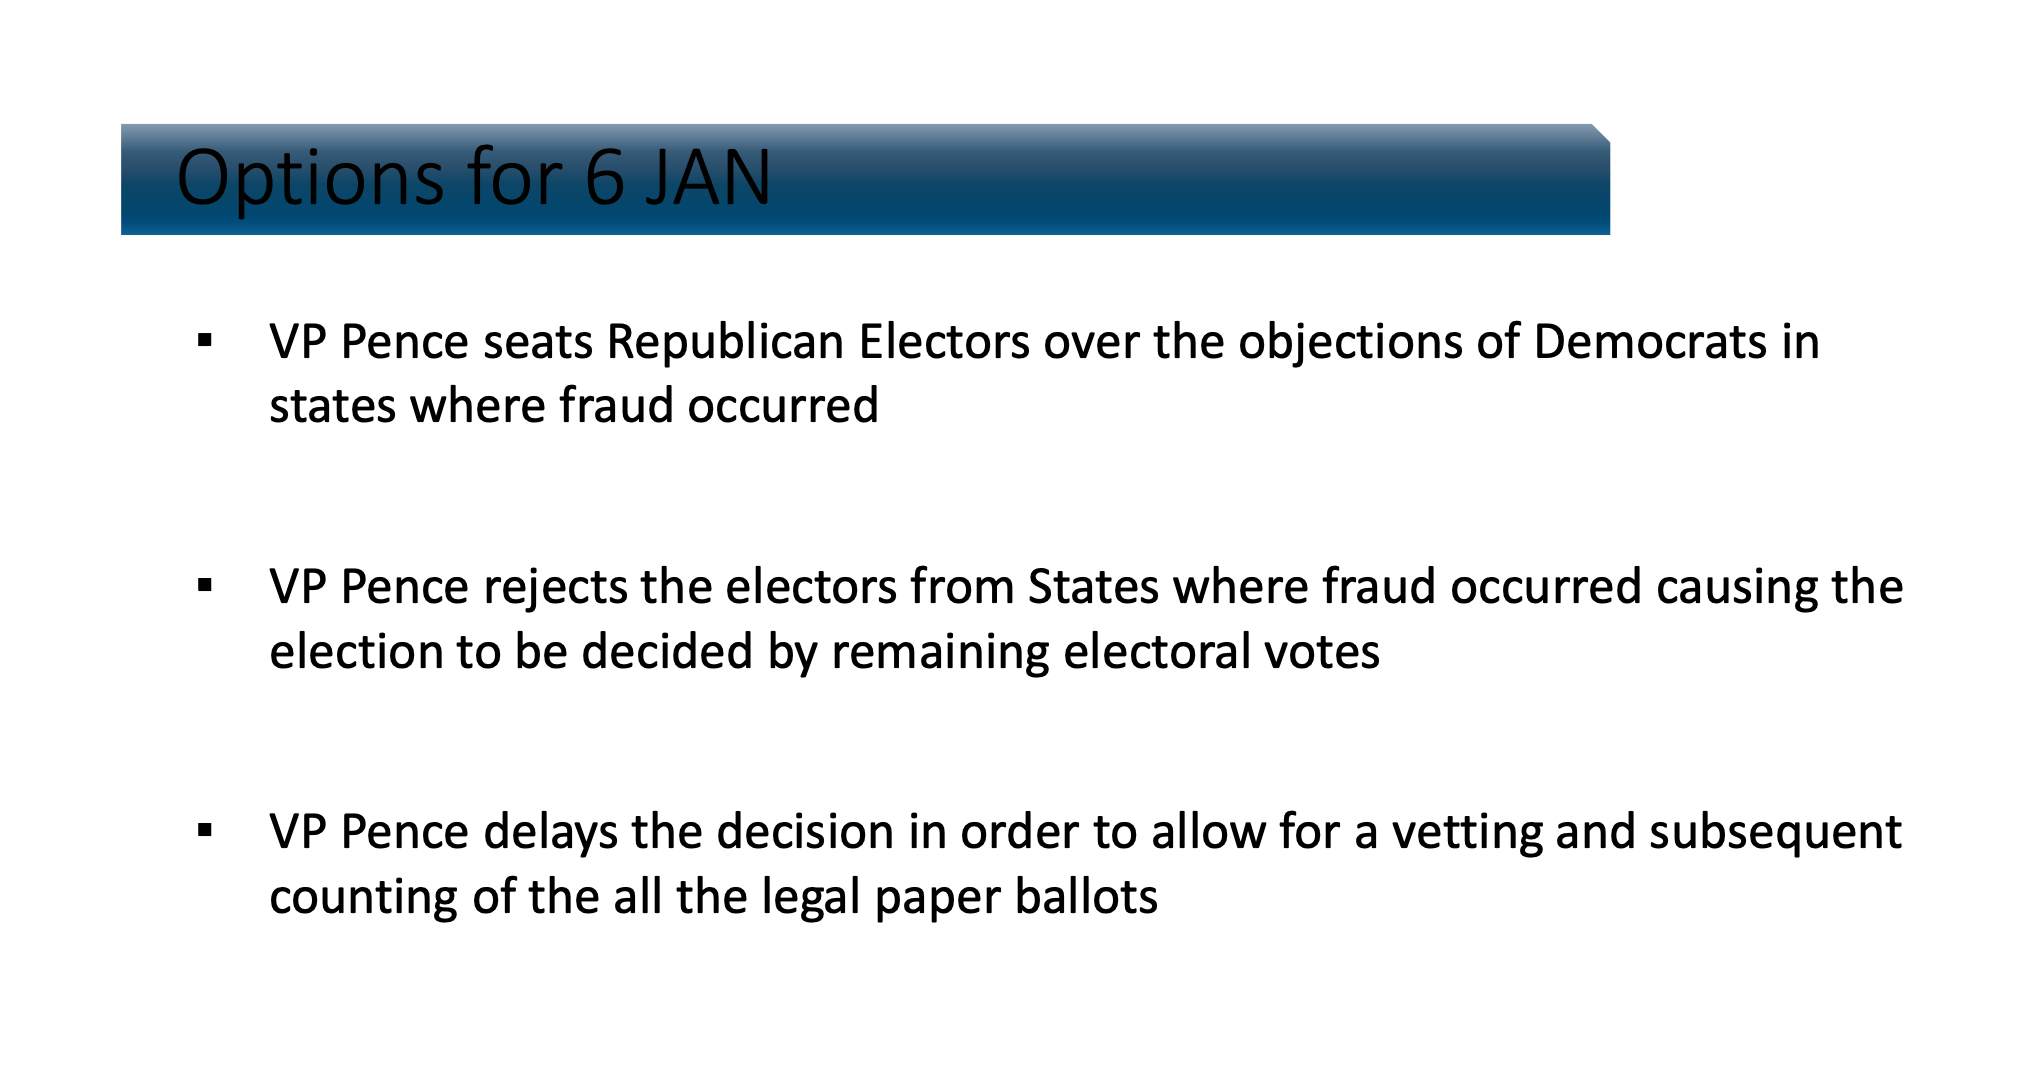 La tercera “opción para el 6 de enero” enlistada en esta diapositiva corresponde a un plan propuesto por el senador de Texas Ted Cruz